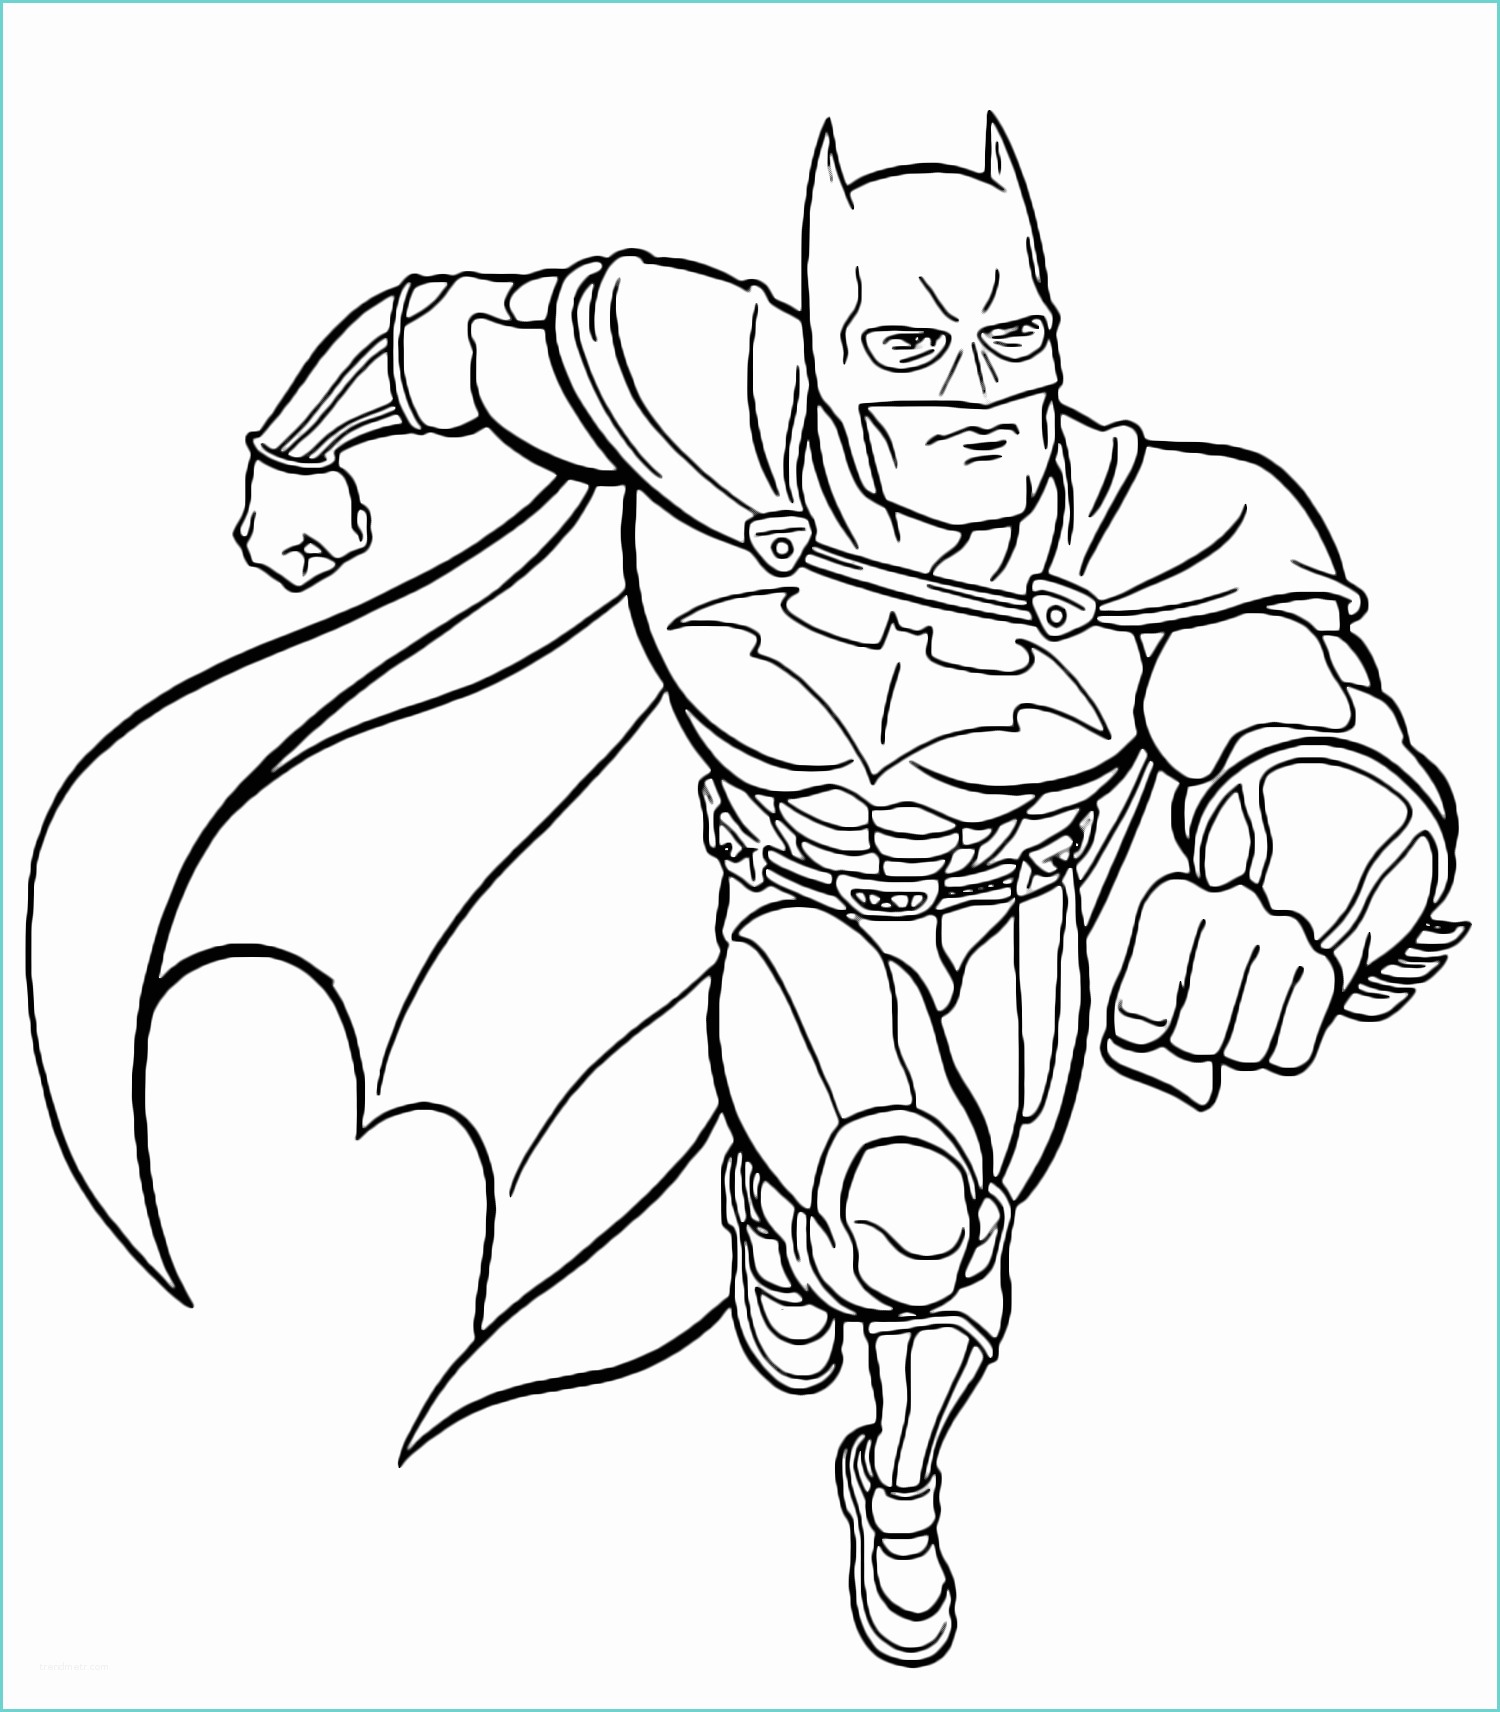 Disegni Da Stampare Batman Il Supereroe Batman Da Colorare Gratis Disegni Da